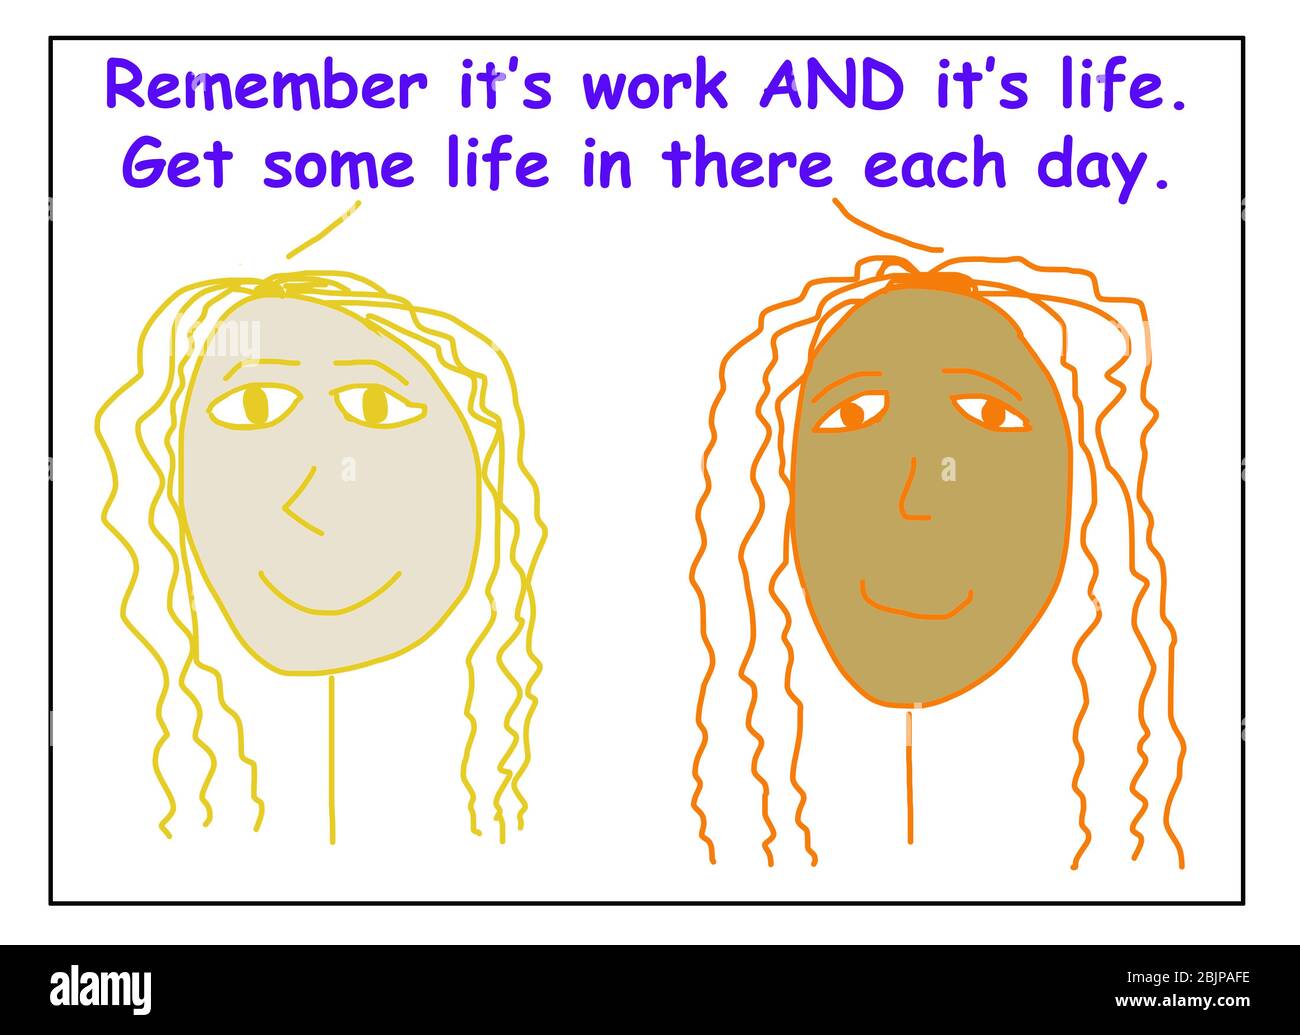 Farbe Cartoon von zwei ethnisch vielfältig, lächelnde Frauen sagen, es ist sowohl Arbeit UND Leben, um etwas Leben in dort jeden Tag zu bekommen. Stockfoto